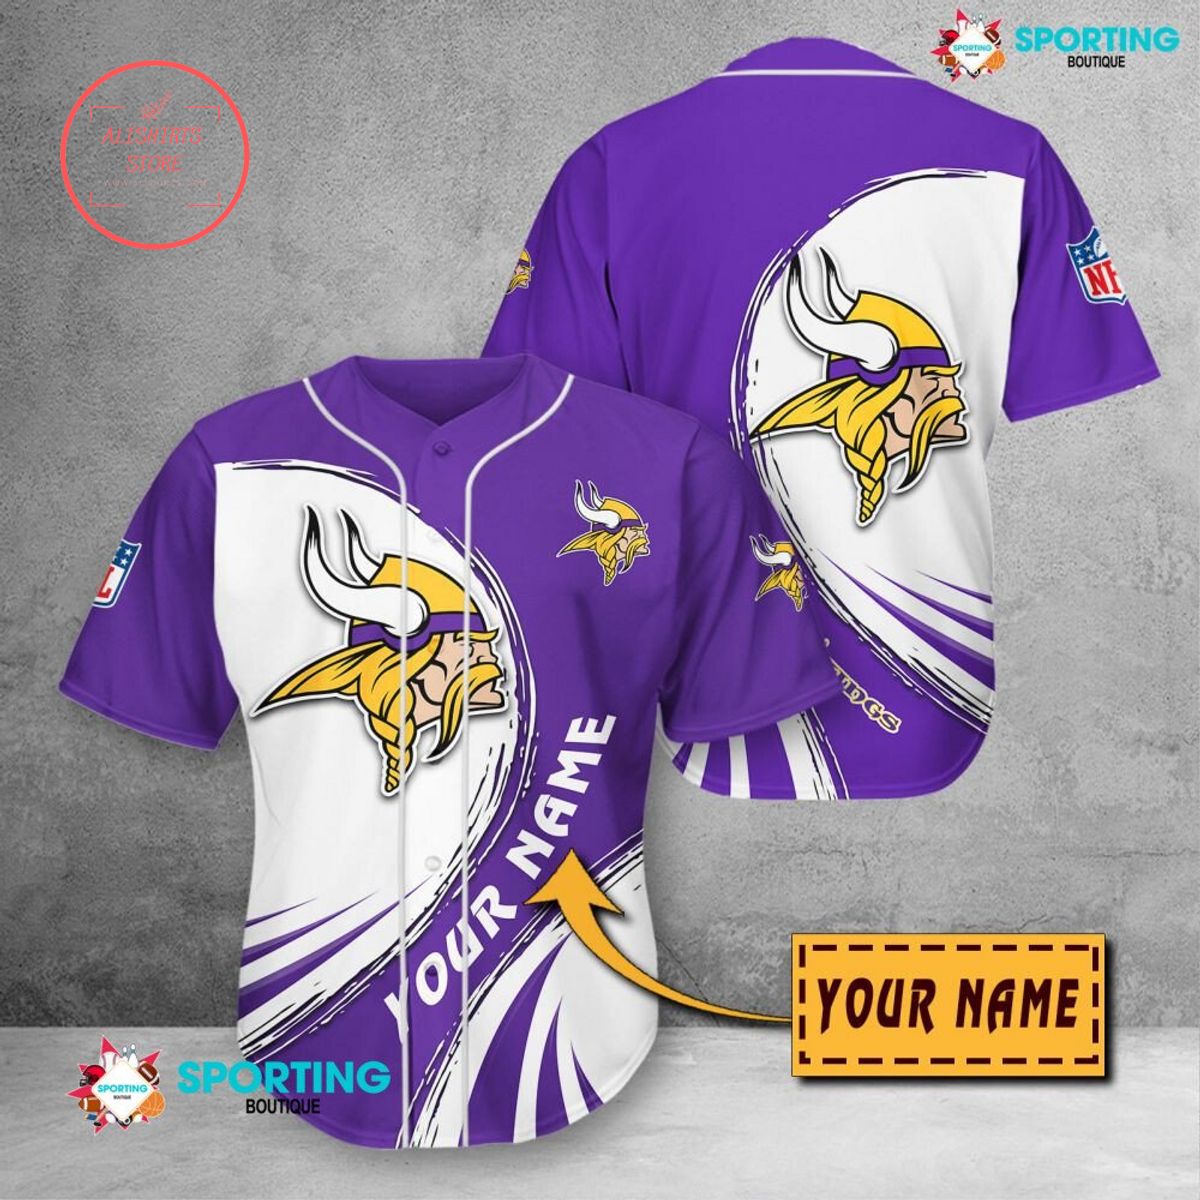 Minnesota Vikings NFL Personalized Baseball Jersey